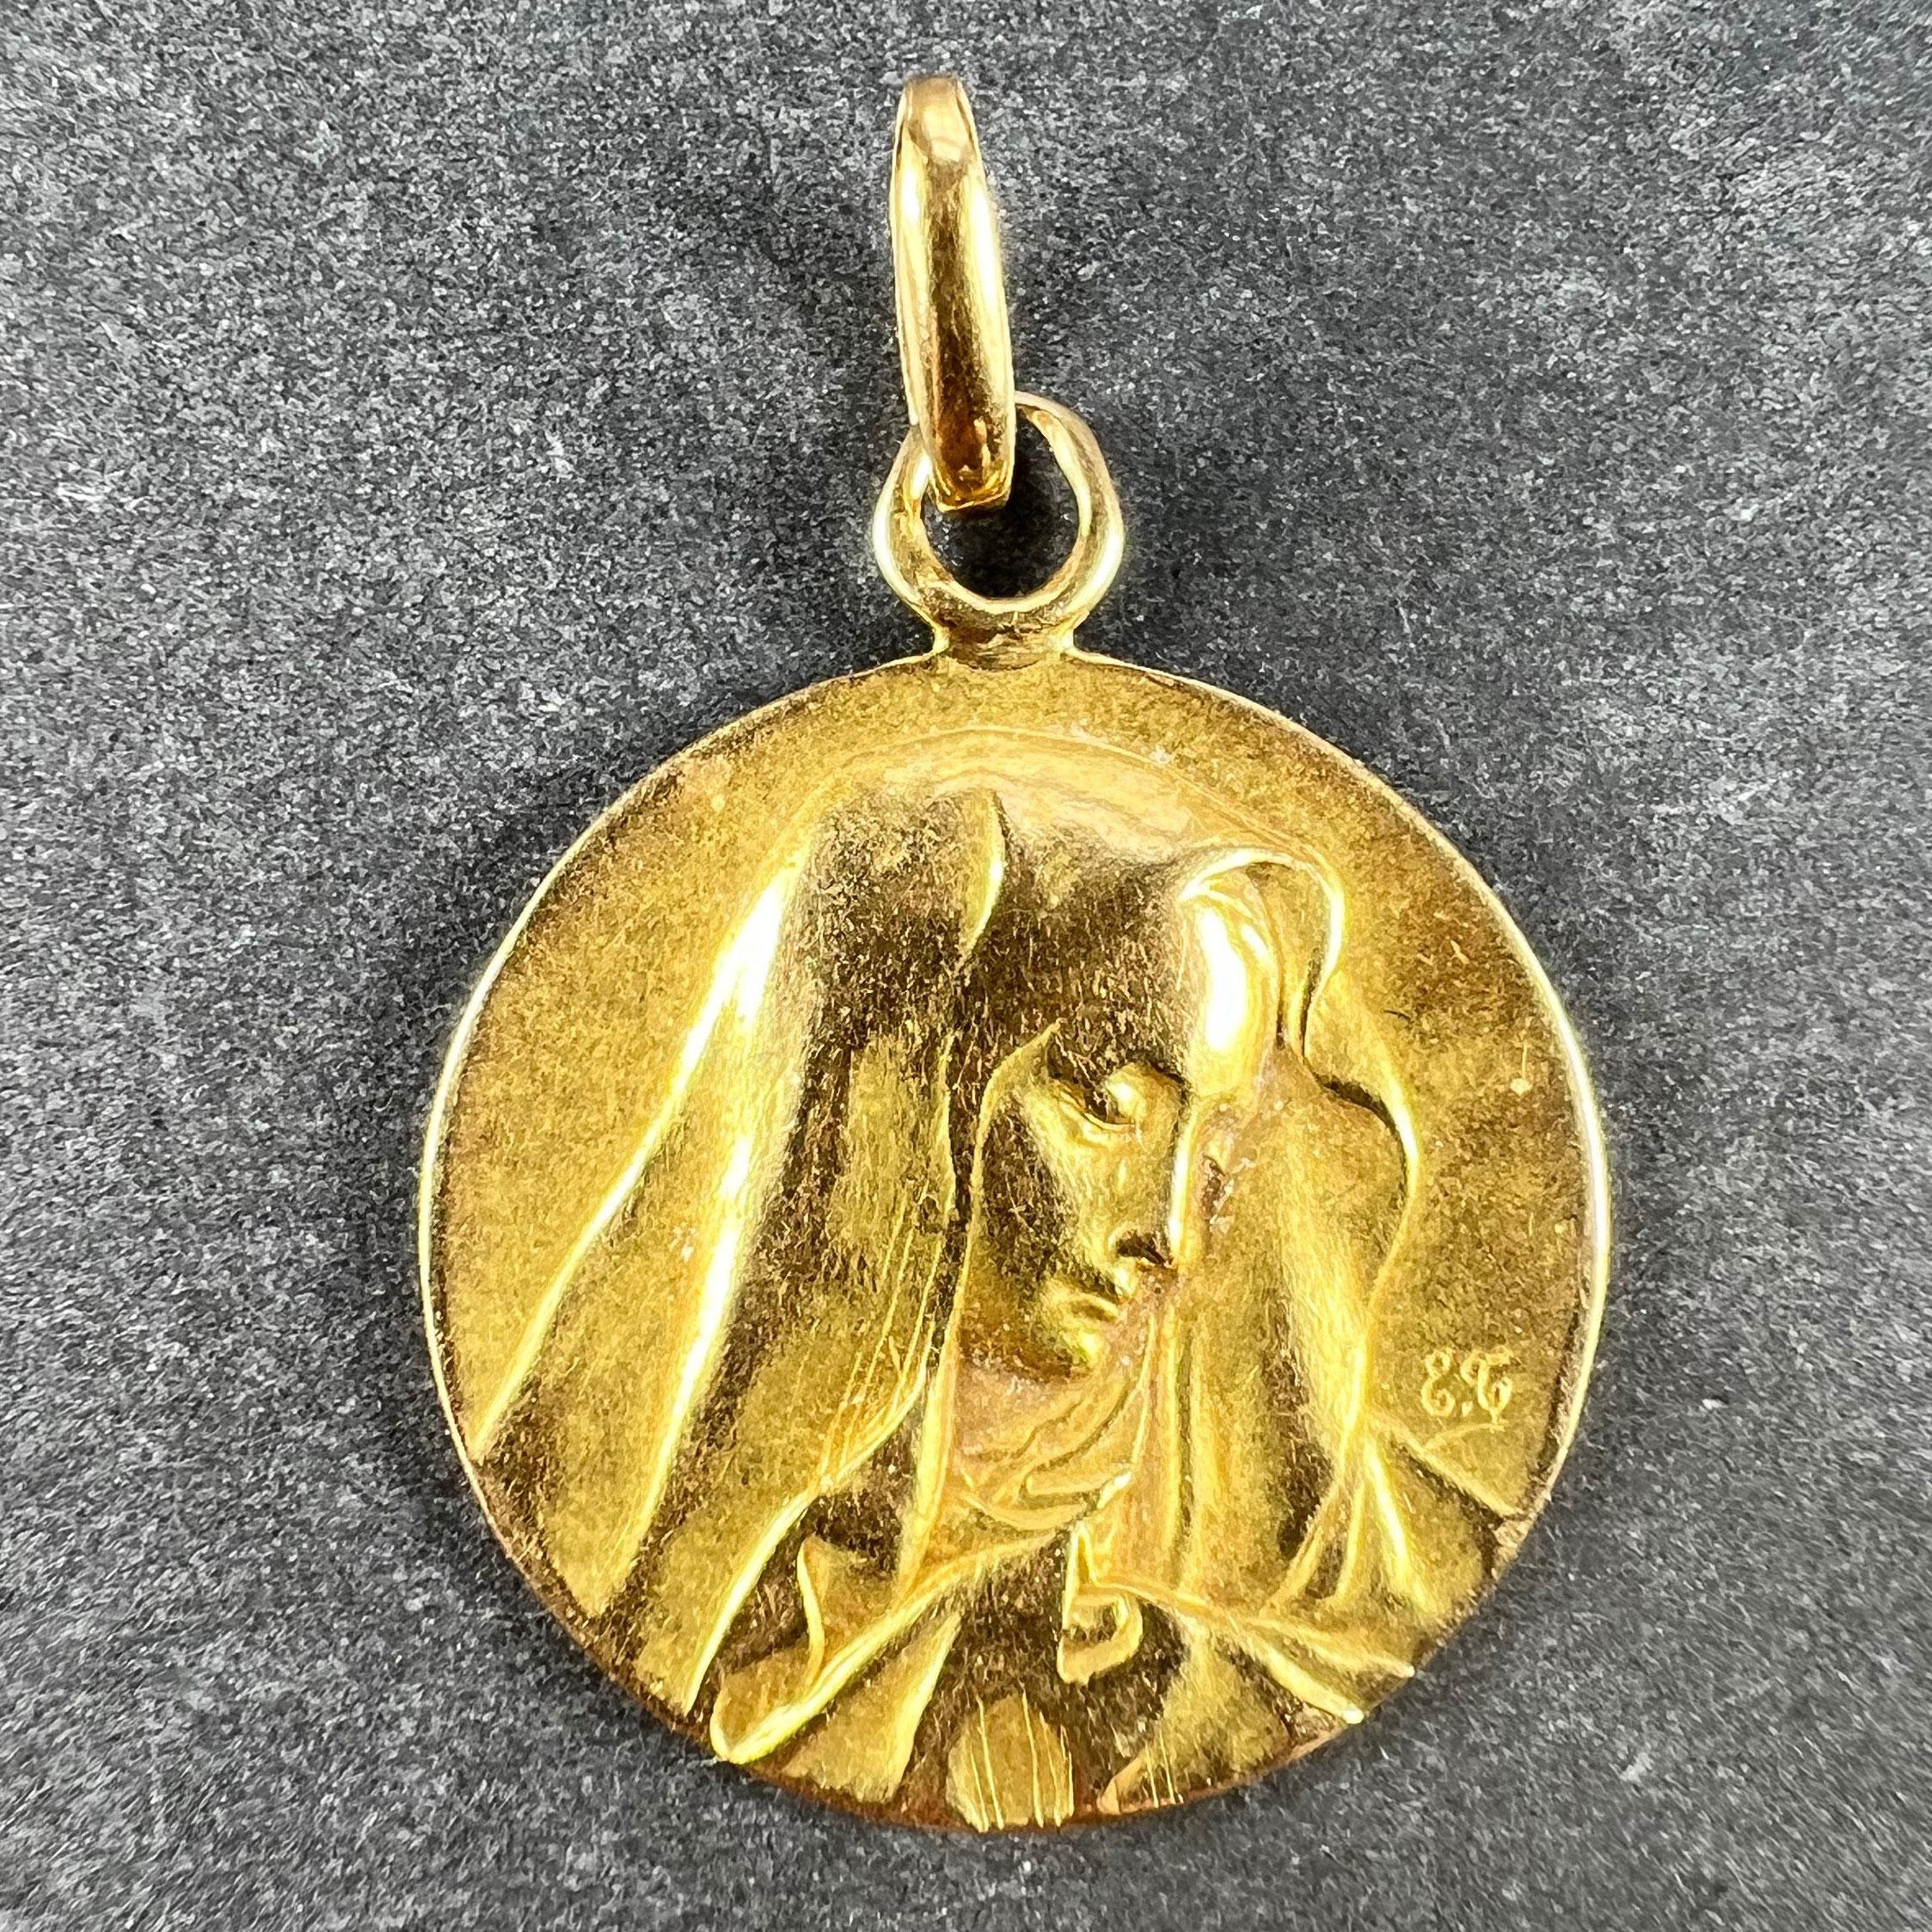 Französischer Anhänger aus 18-karätigem Gelbgold in Form einer runden Medaille, die die Jungfrau Maria in einem Schleier darstellt. Auf der Rückseite ist Aline eingraviert und das Datum 26. März 1913. Nicht gestempelt, aber auf 18 Karat Gold